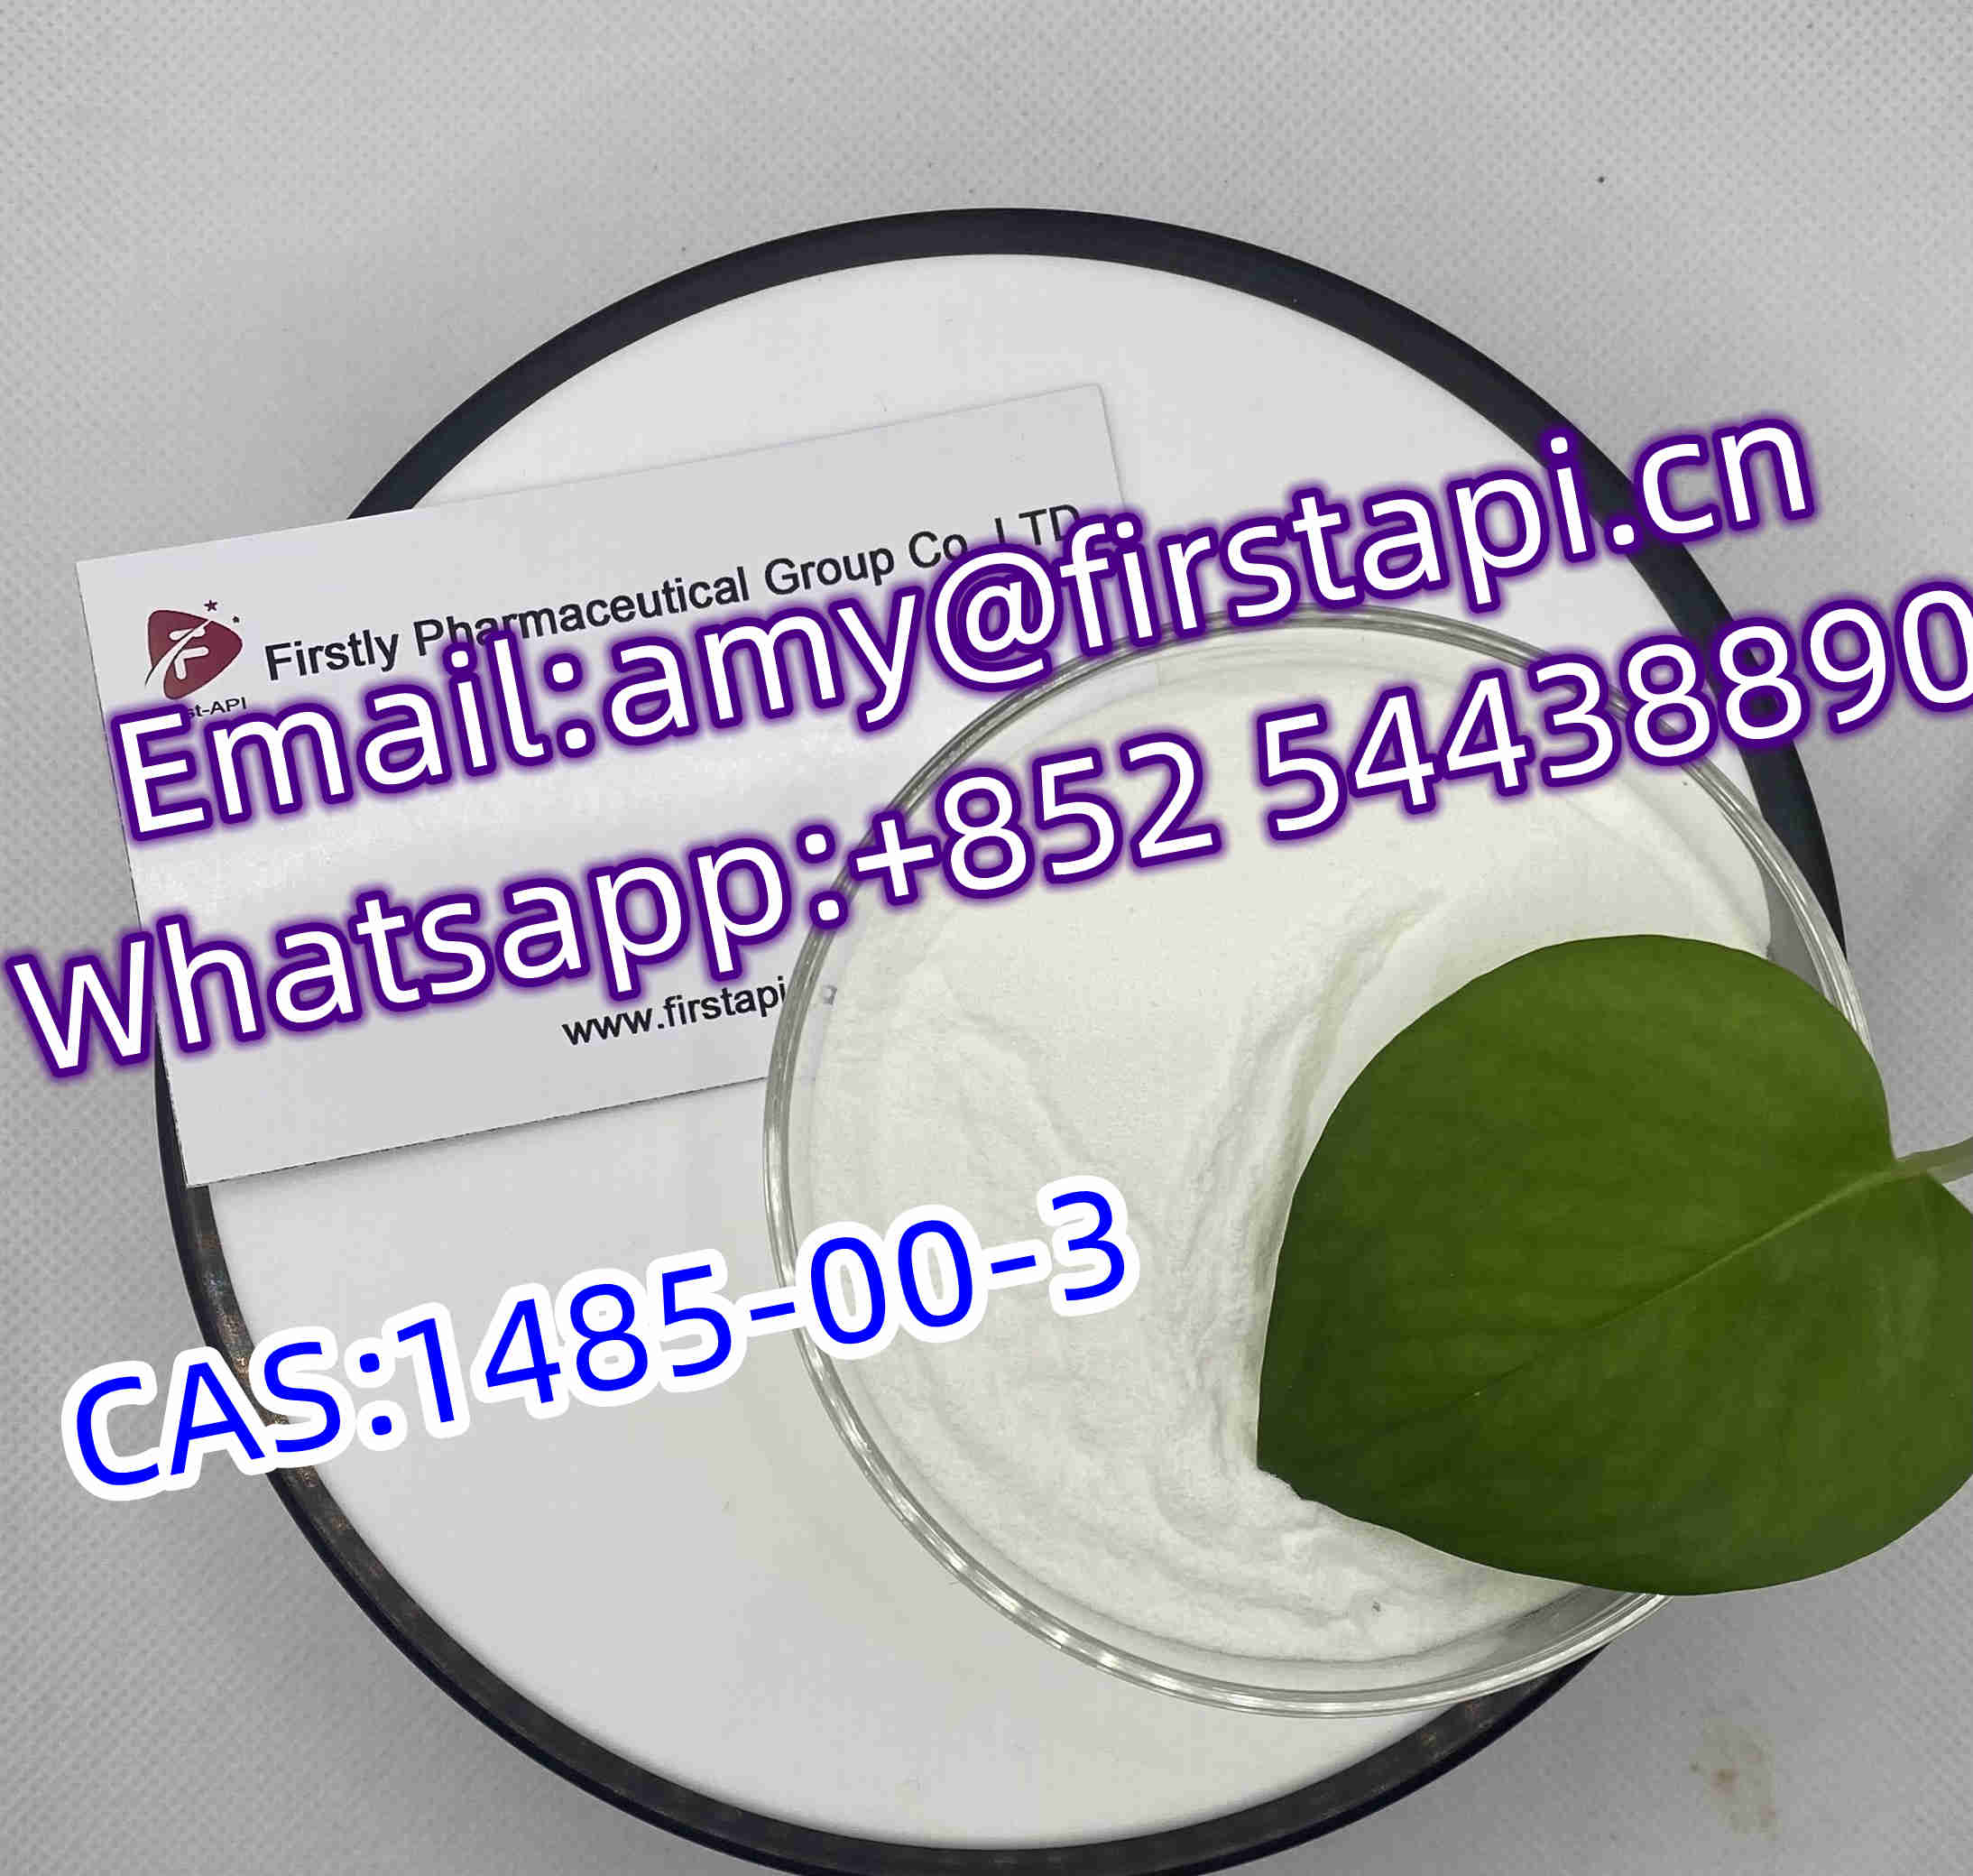 3,4-Methylenedioxy-beta-nitrostyrene   CAS No.:1485-00-3   Whatsapp:+852 54438890 - photo